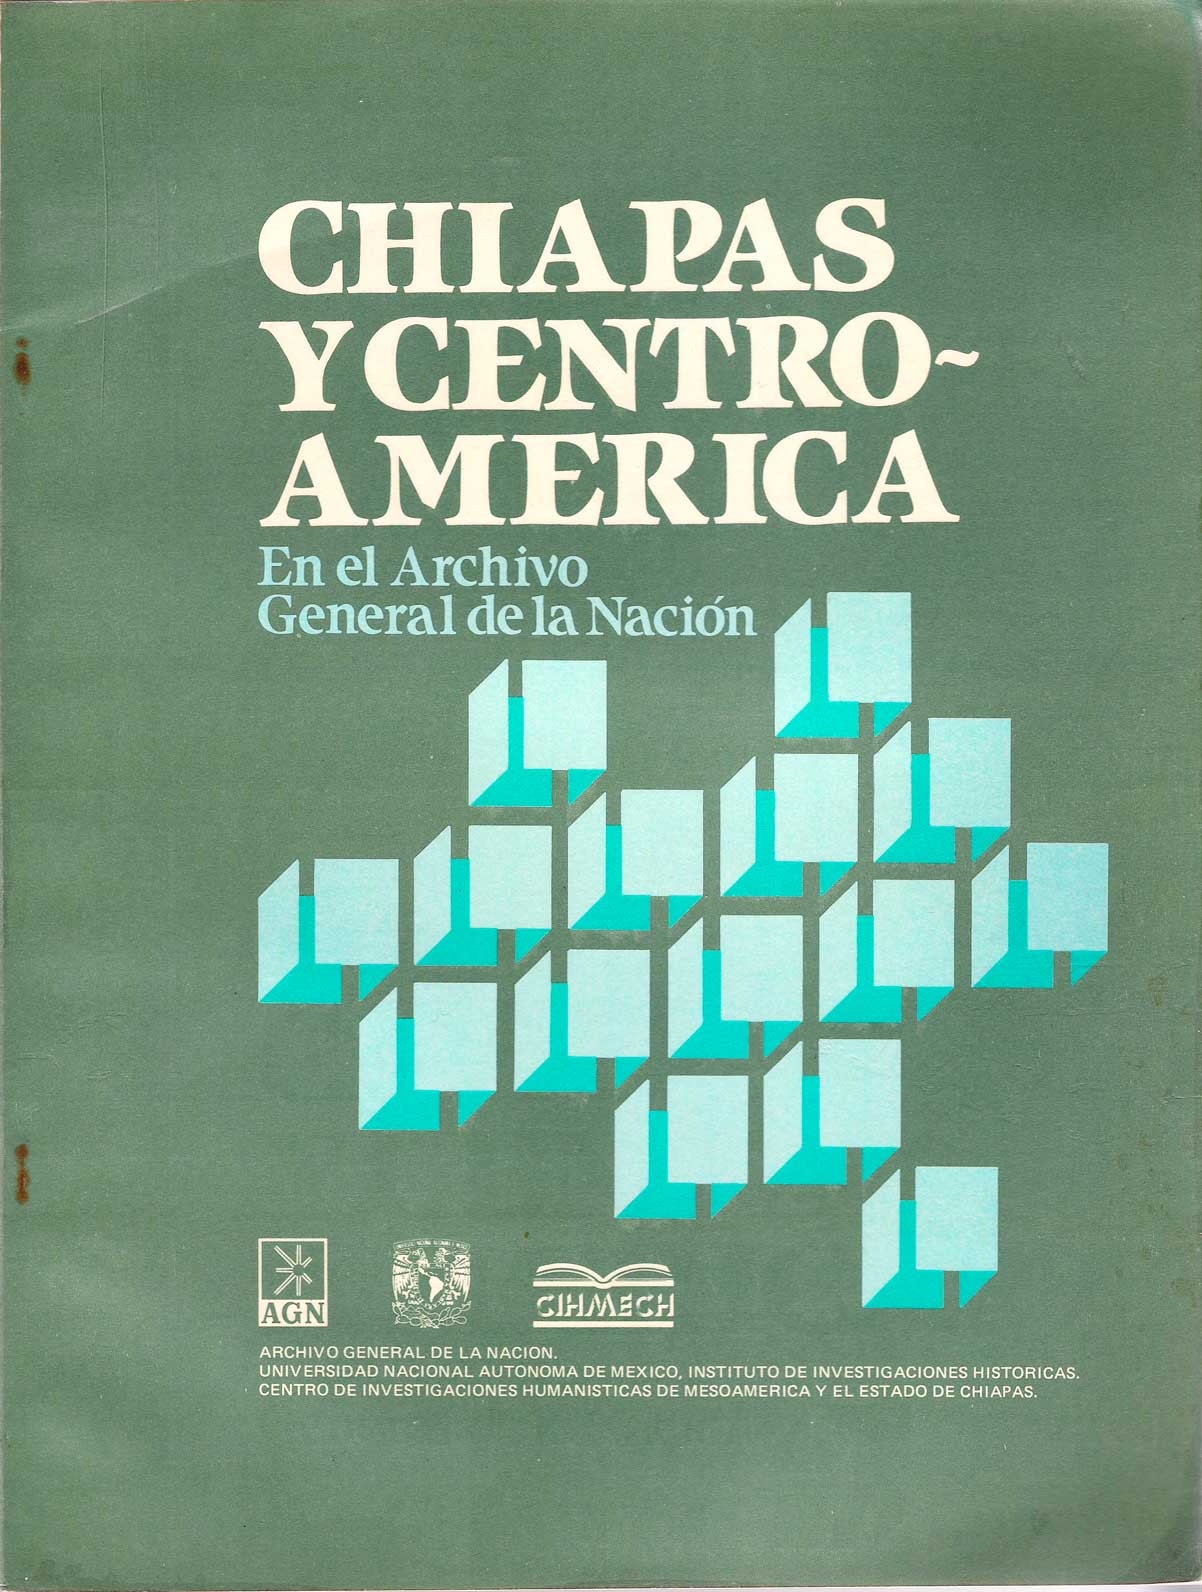 Chiapas y Centroamérica en el Archivo General de la Nación. Época colonial